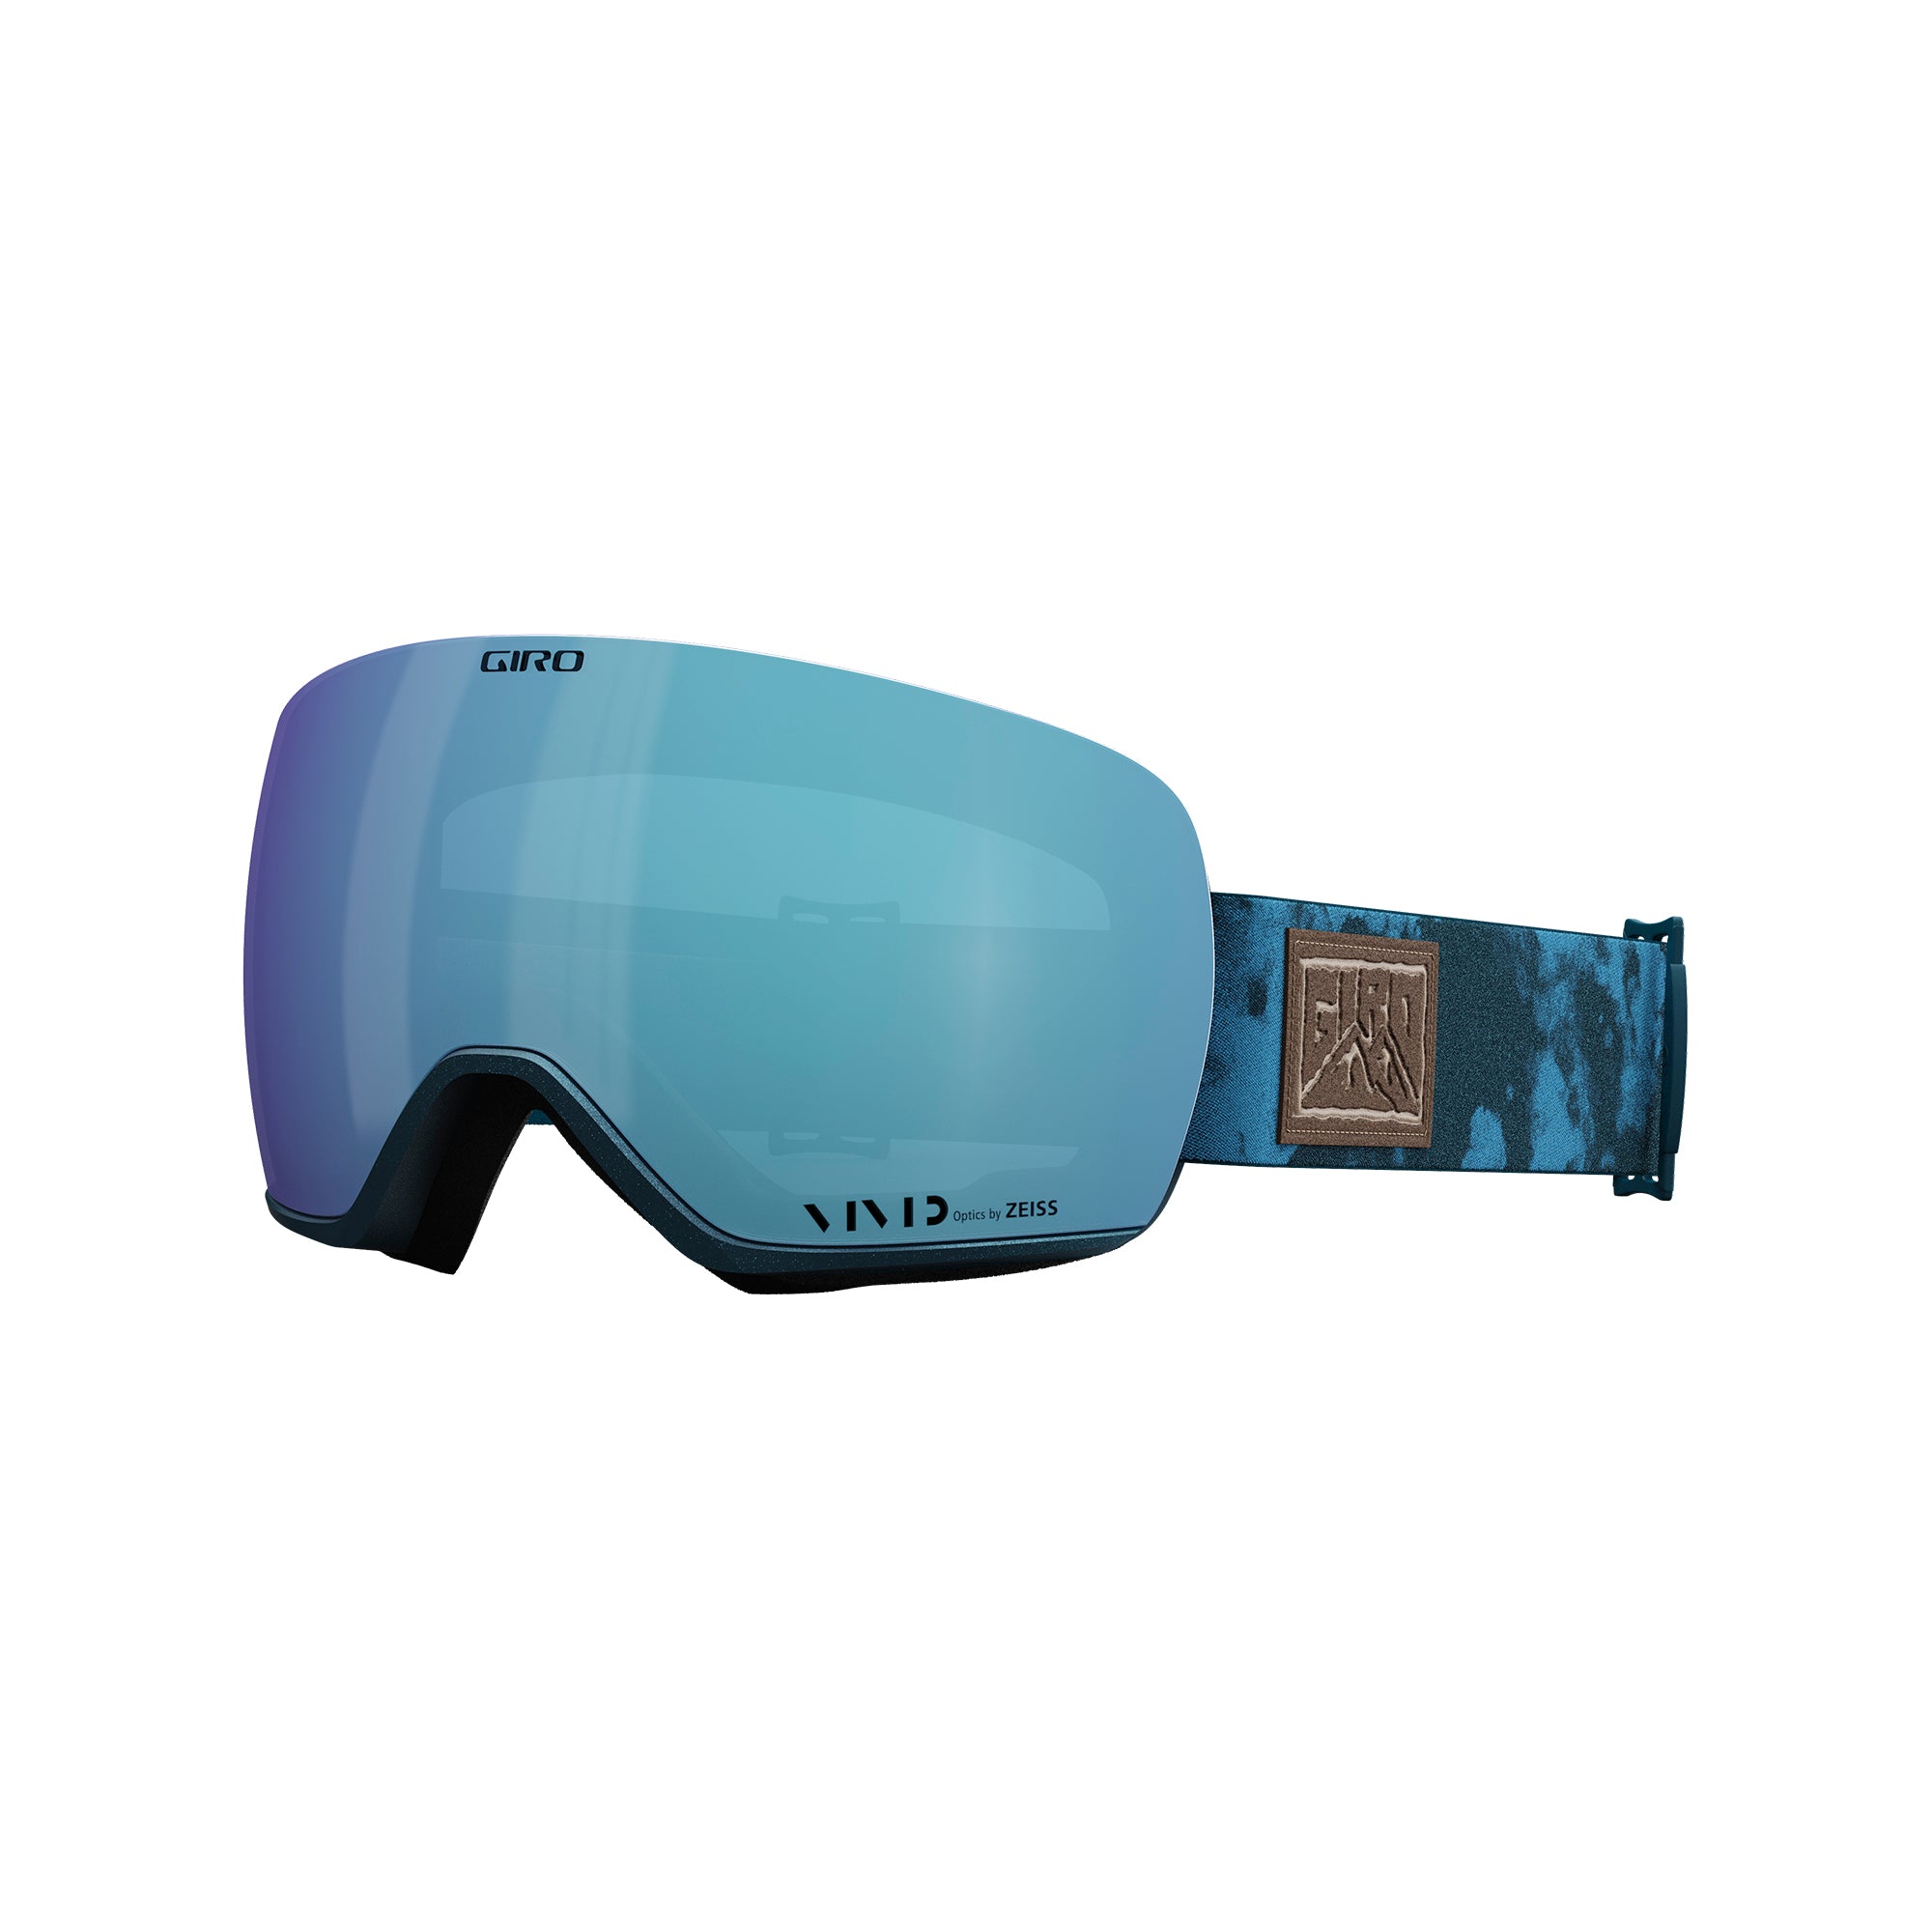 Giro Lusi Ski Goggles Snowboard Goggles for Women Black Clas 並行